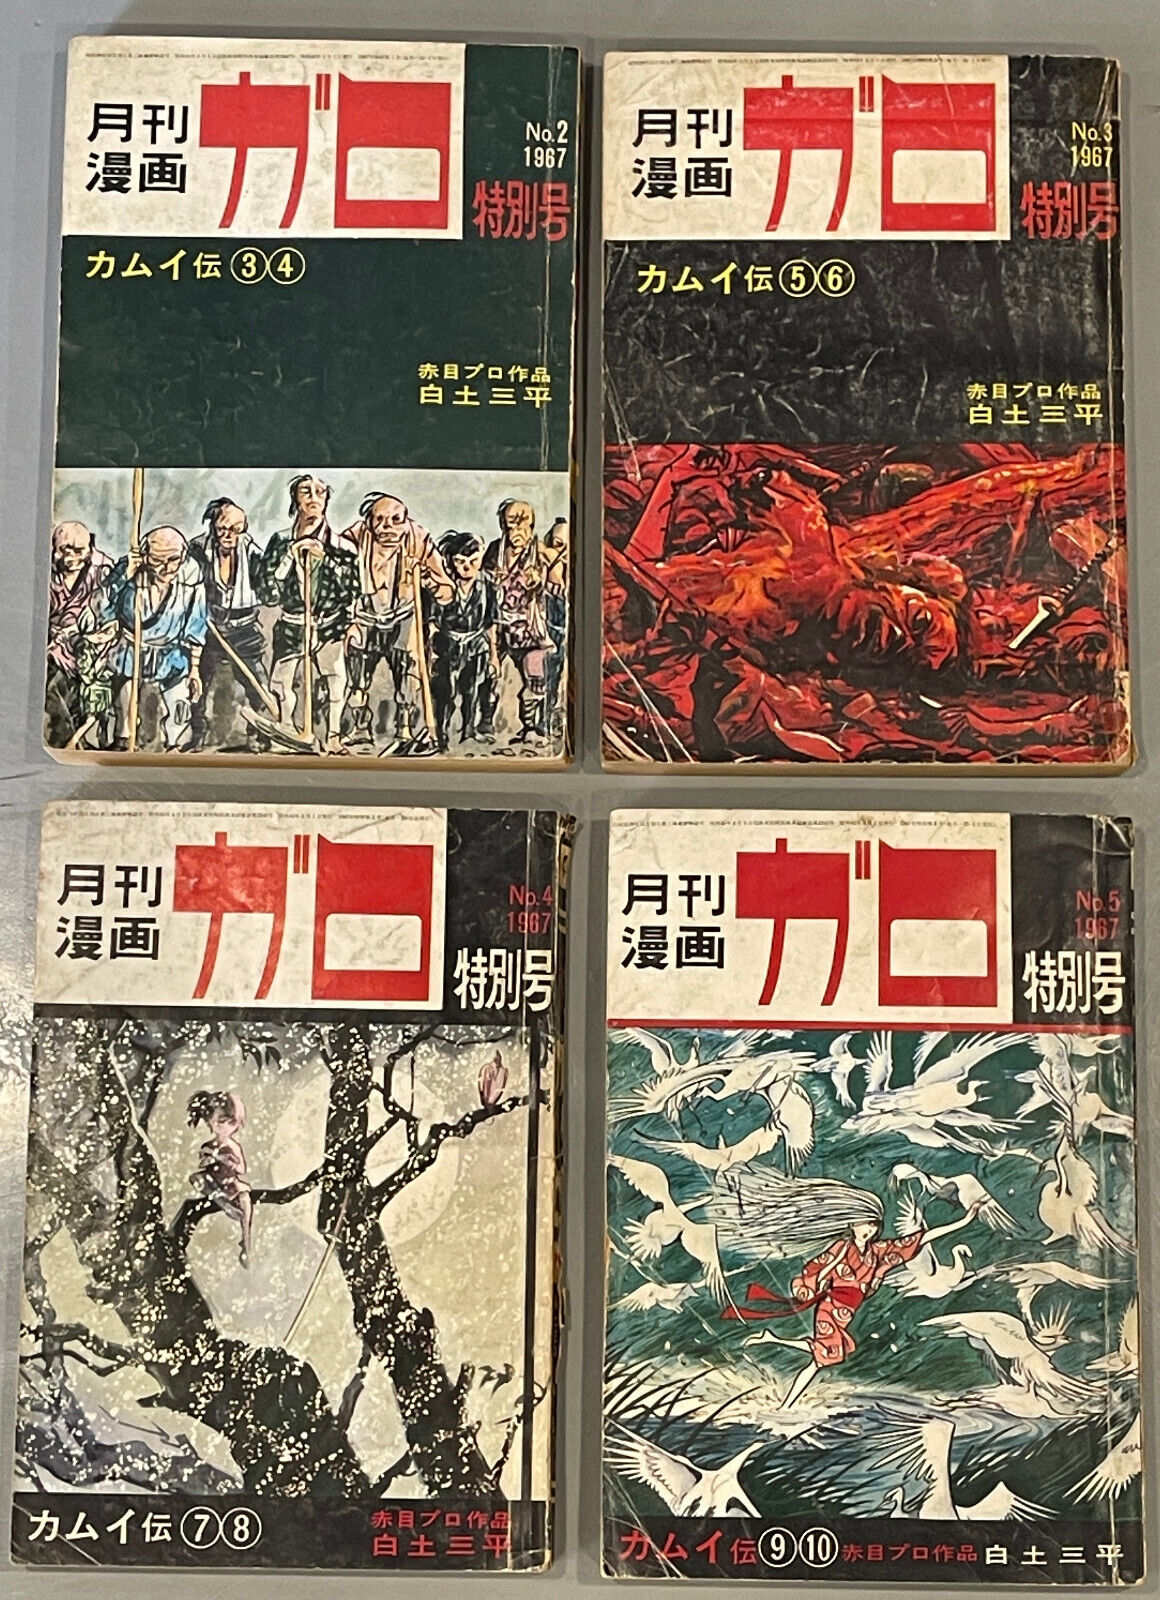 ガロ GARO Monthly Manga 1967 Special Extra Issues Kamui Den Comics Japan